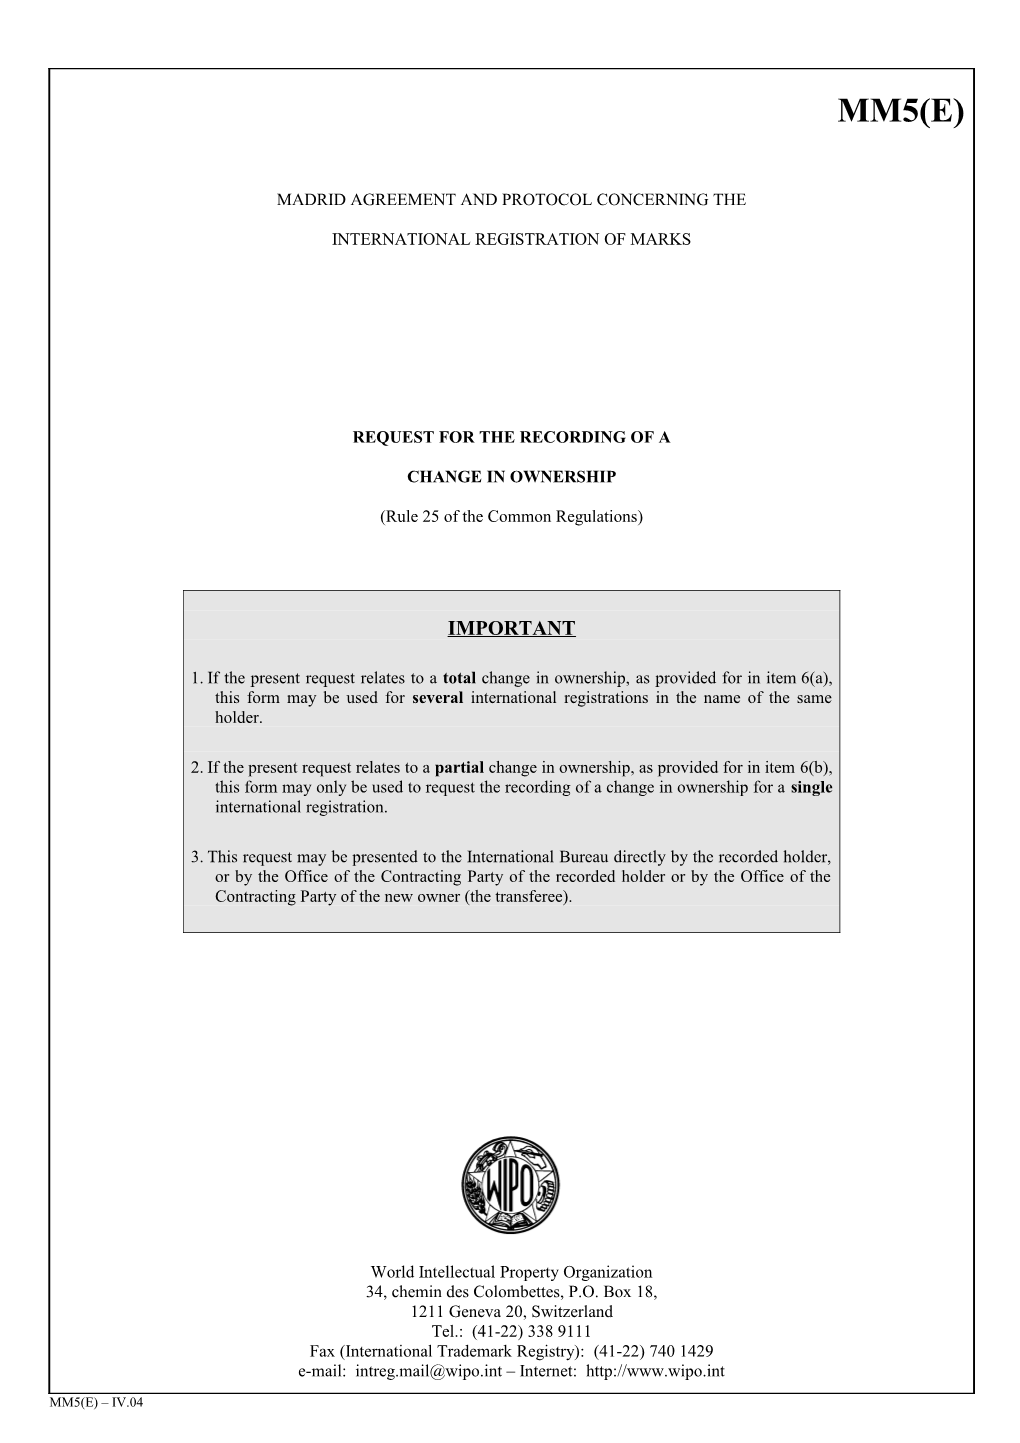 Form MM5 (Madrid Agreement Concerning the International Registration of Marks